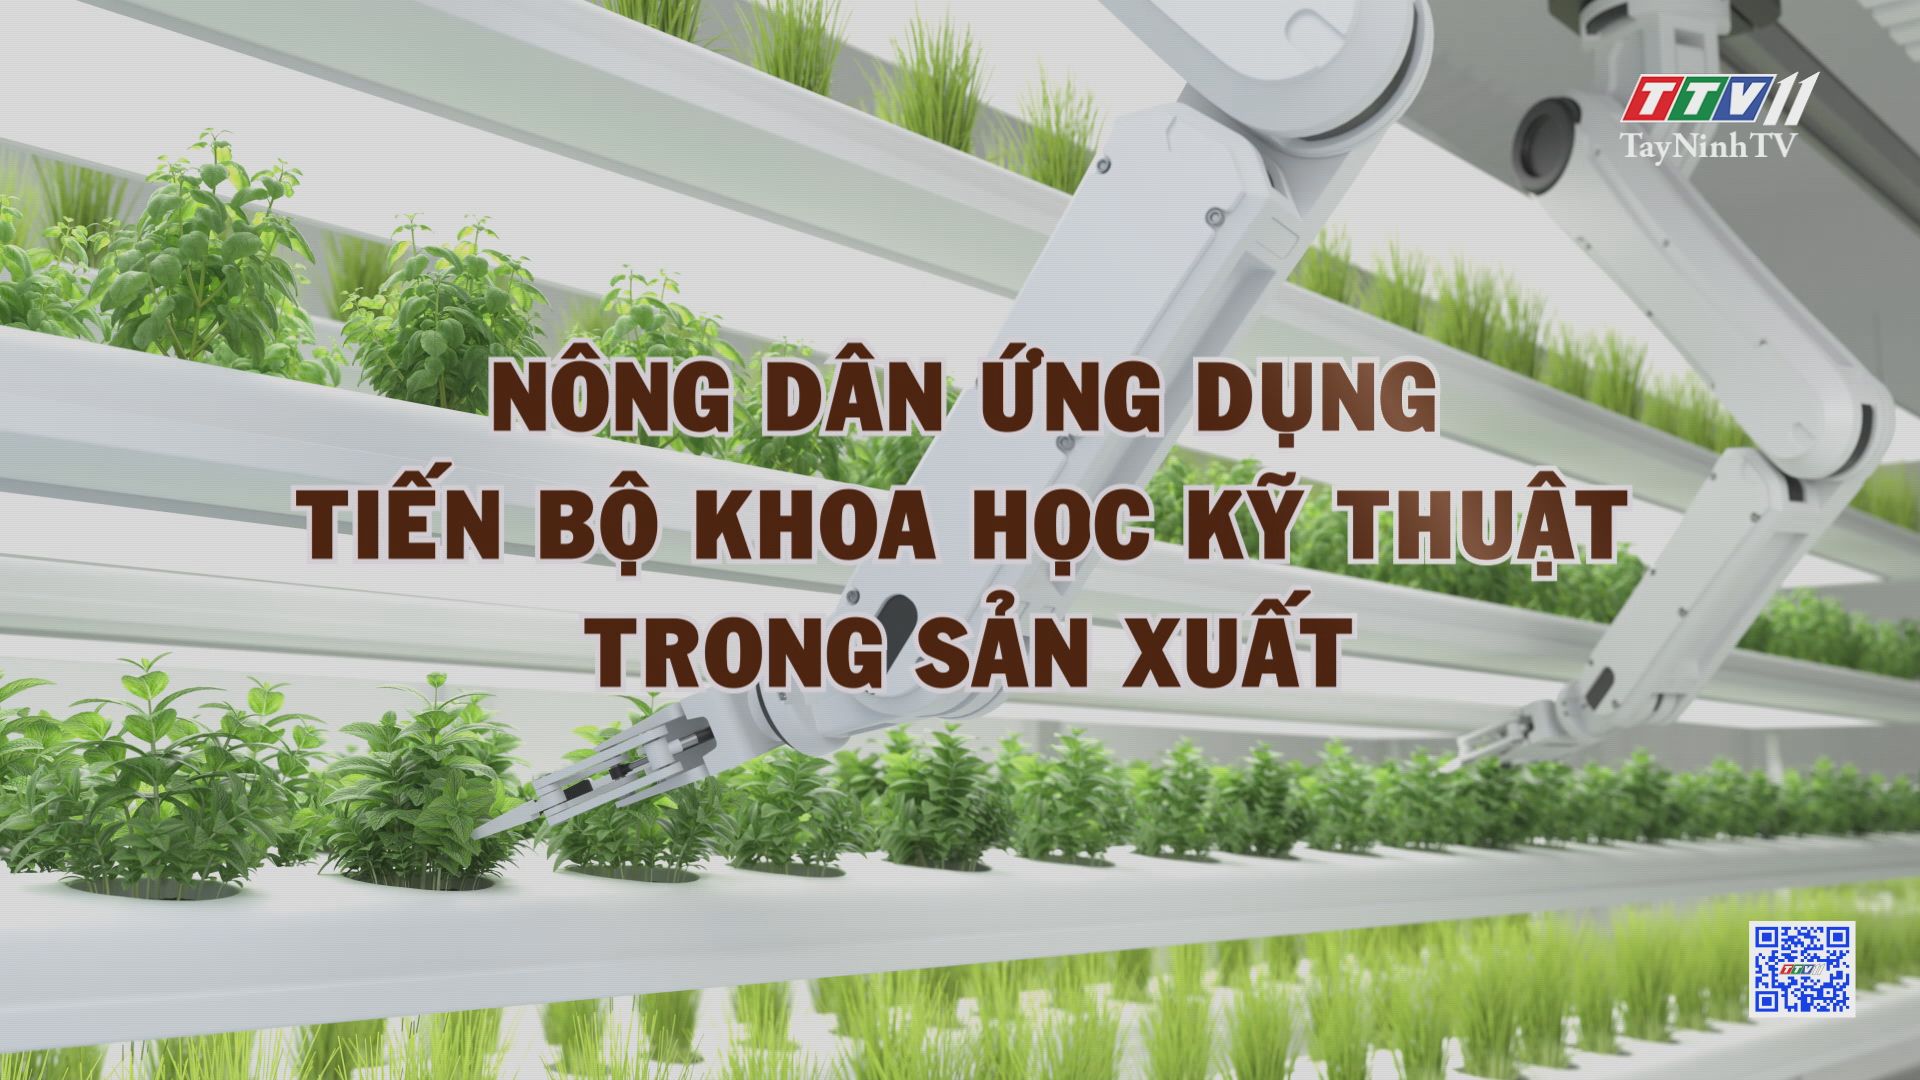 Nông dân ứng dụng tiến bộ khoa học kỹ thuật trong sản xuất | NÔNG NGHIỆP TÂY NINH | TayNinhTV